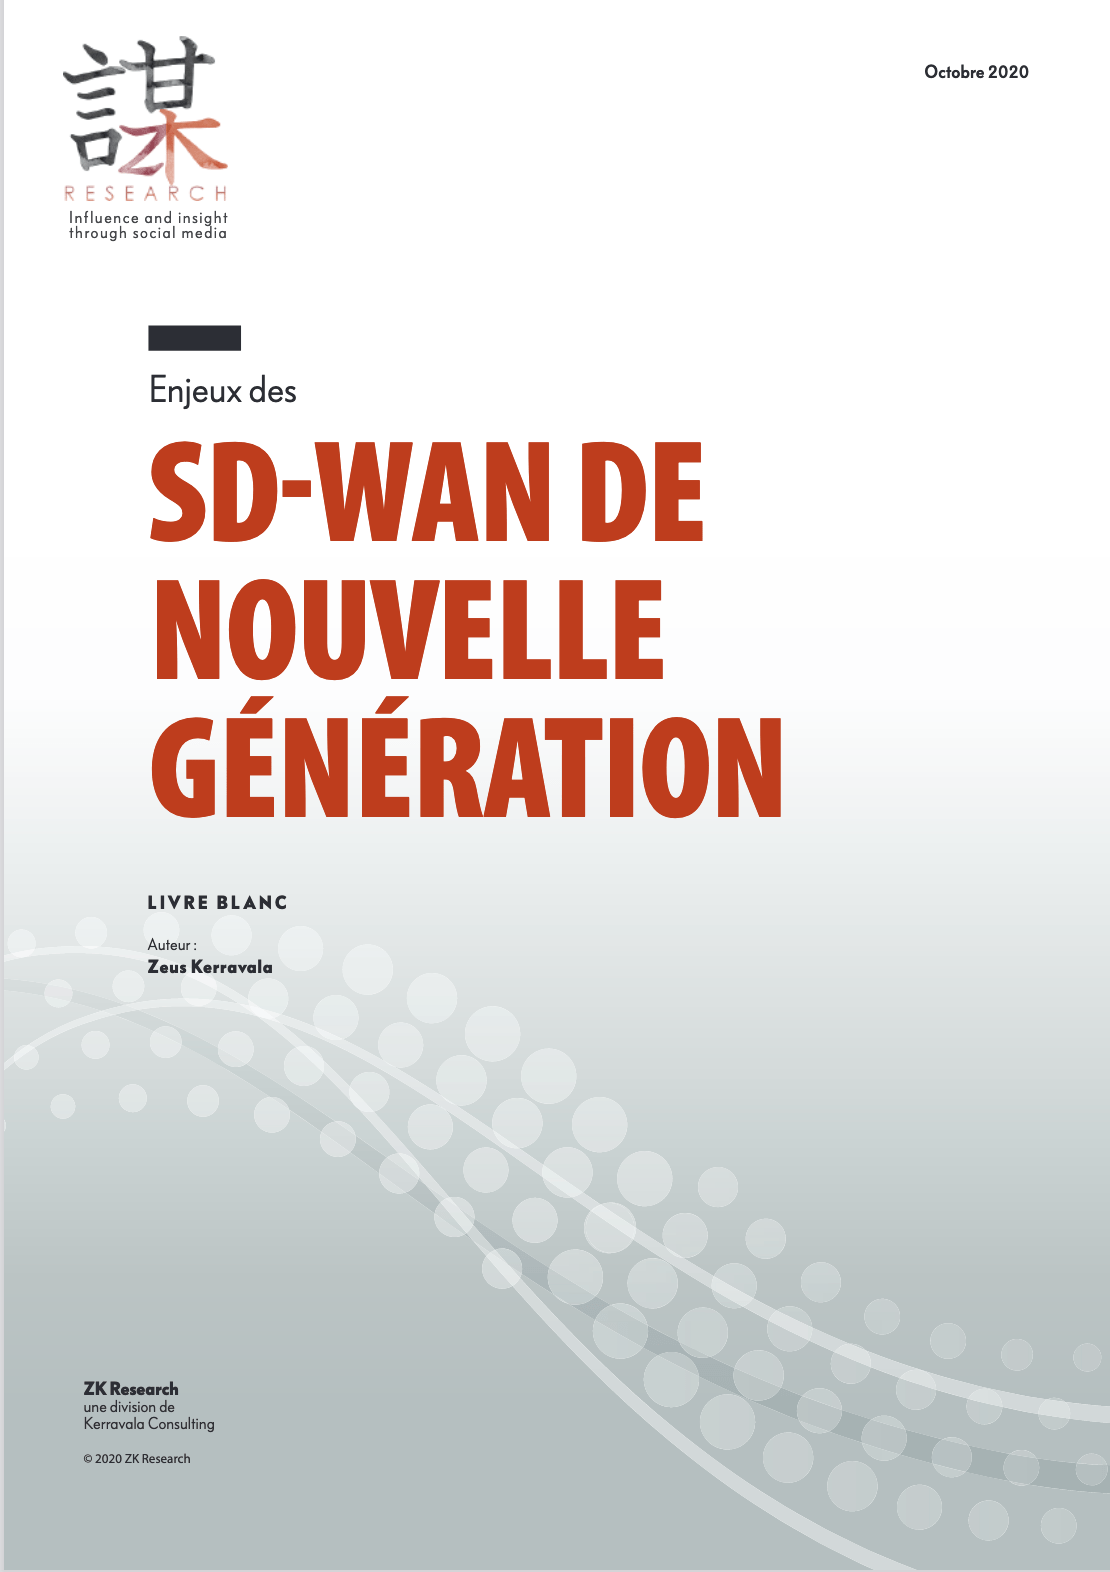 sd wan de nouvelle generation - Avantages d'un SD-WAN de nouvelle génération